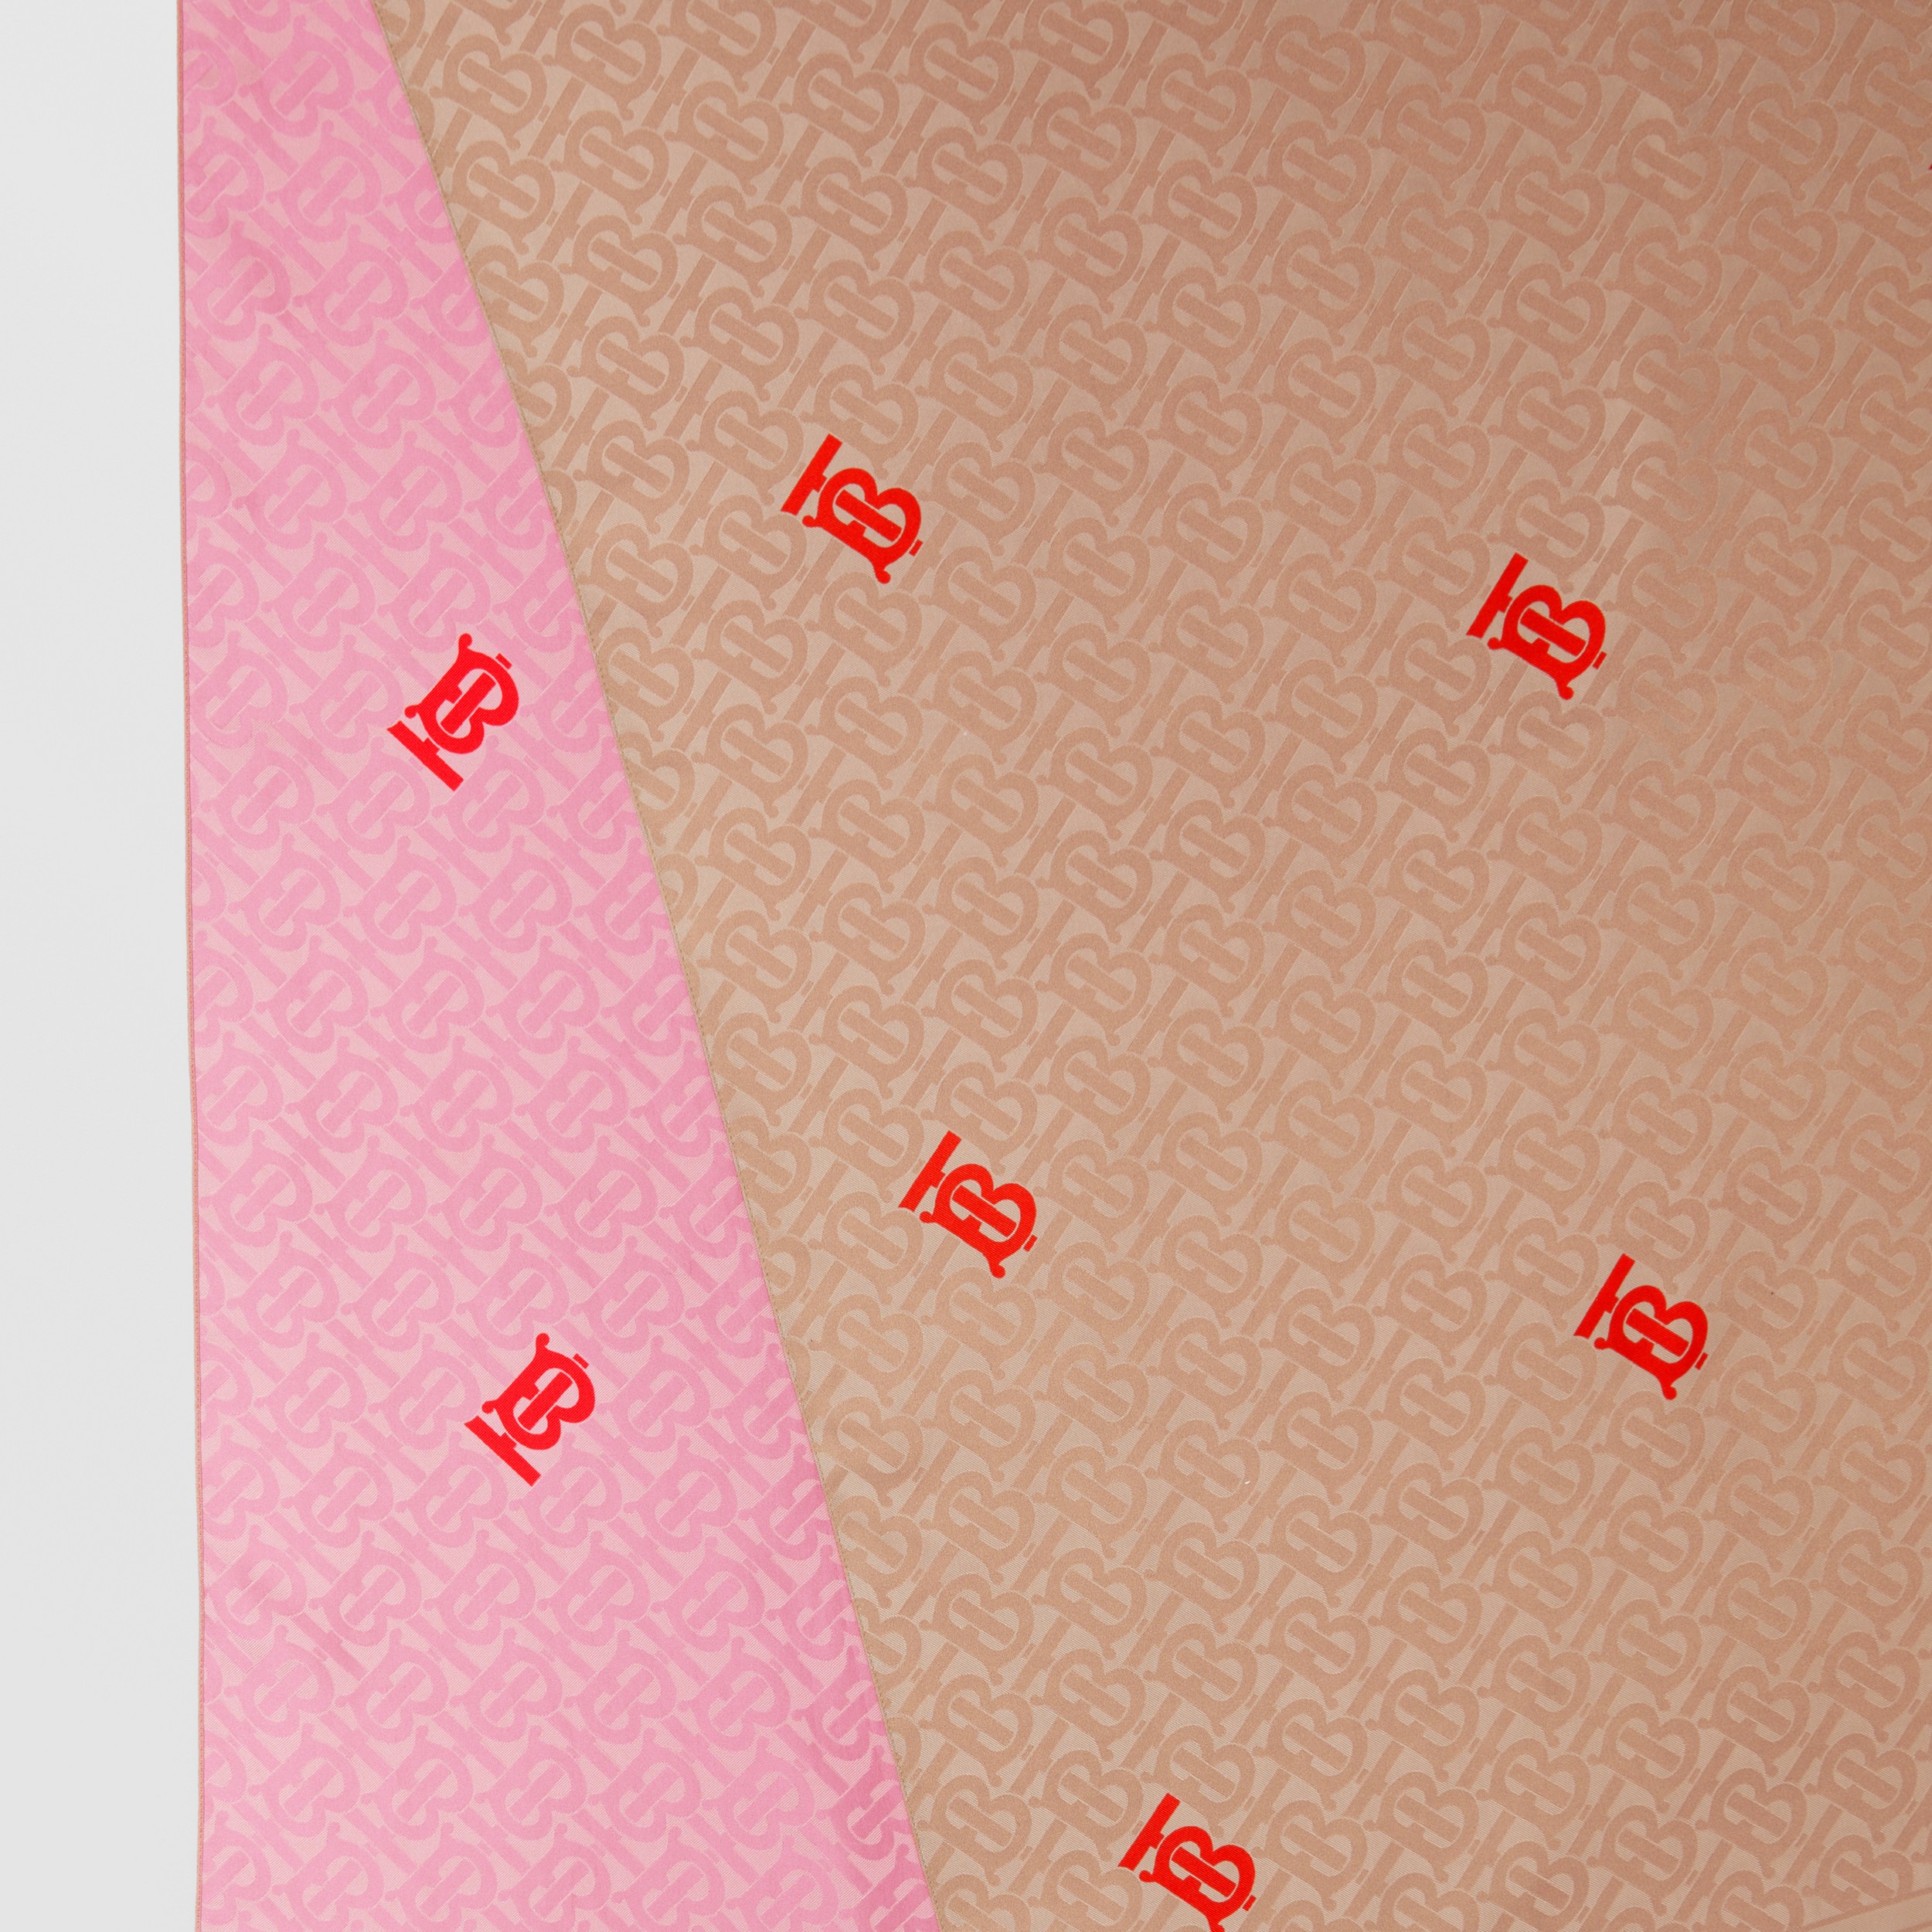 双面专属标识图案提花丝巾 (软黄褐色 / 淡粉色) | Burberry® 博柏利官网 - 2